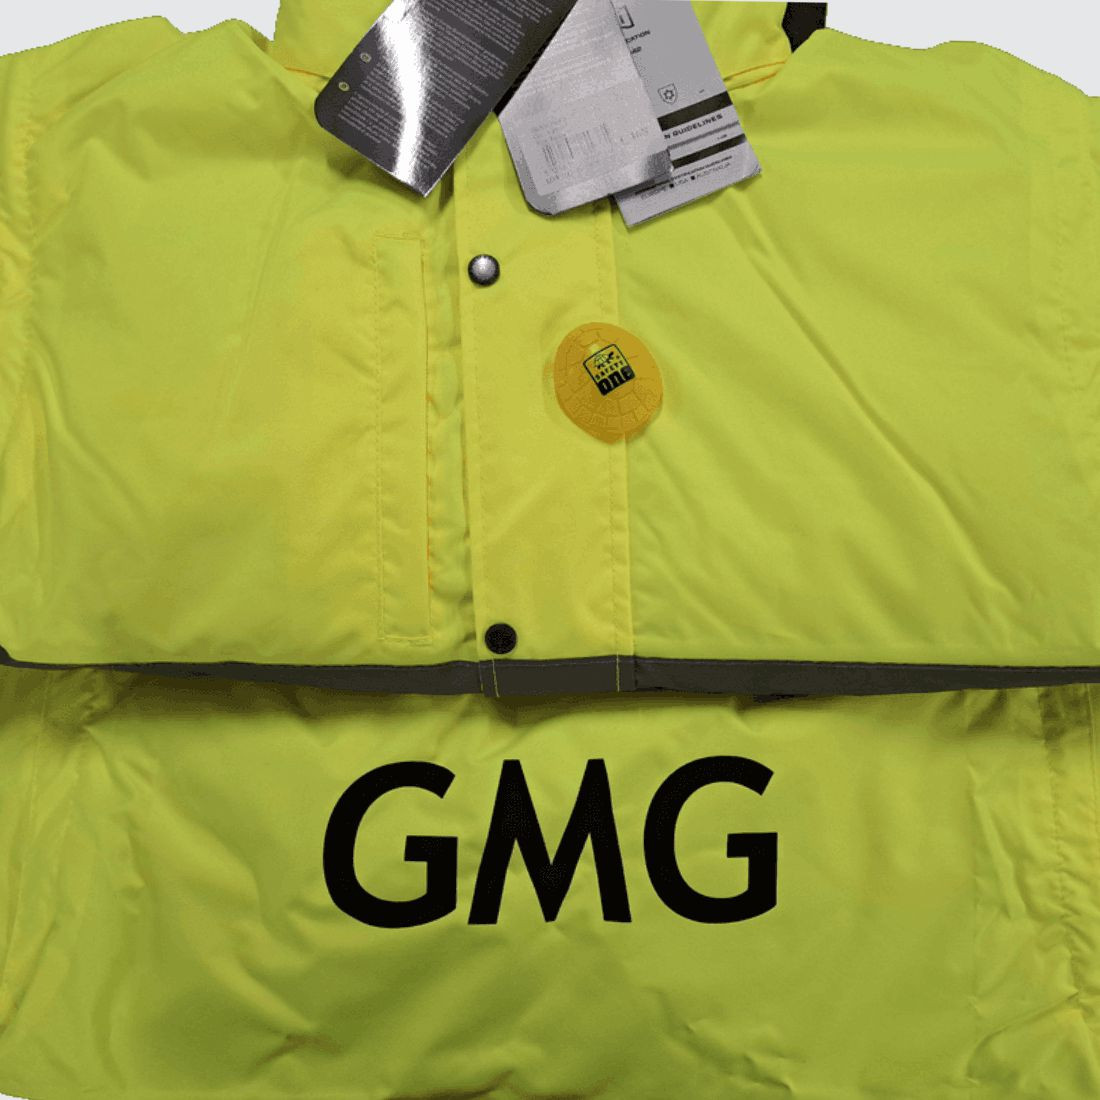 Warnschutz 2-in1-Jacke - Arbeitskleidung